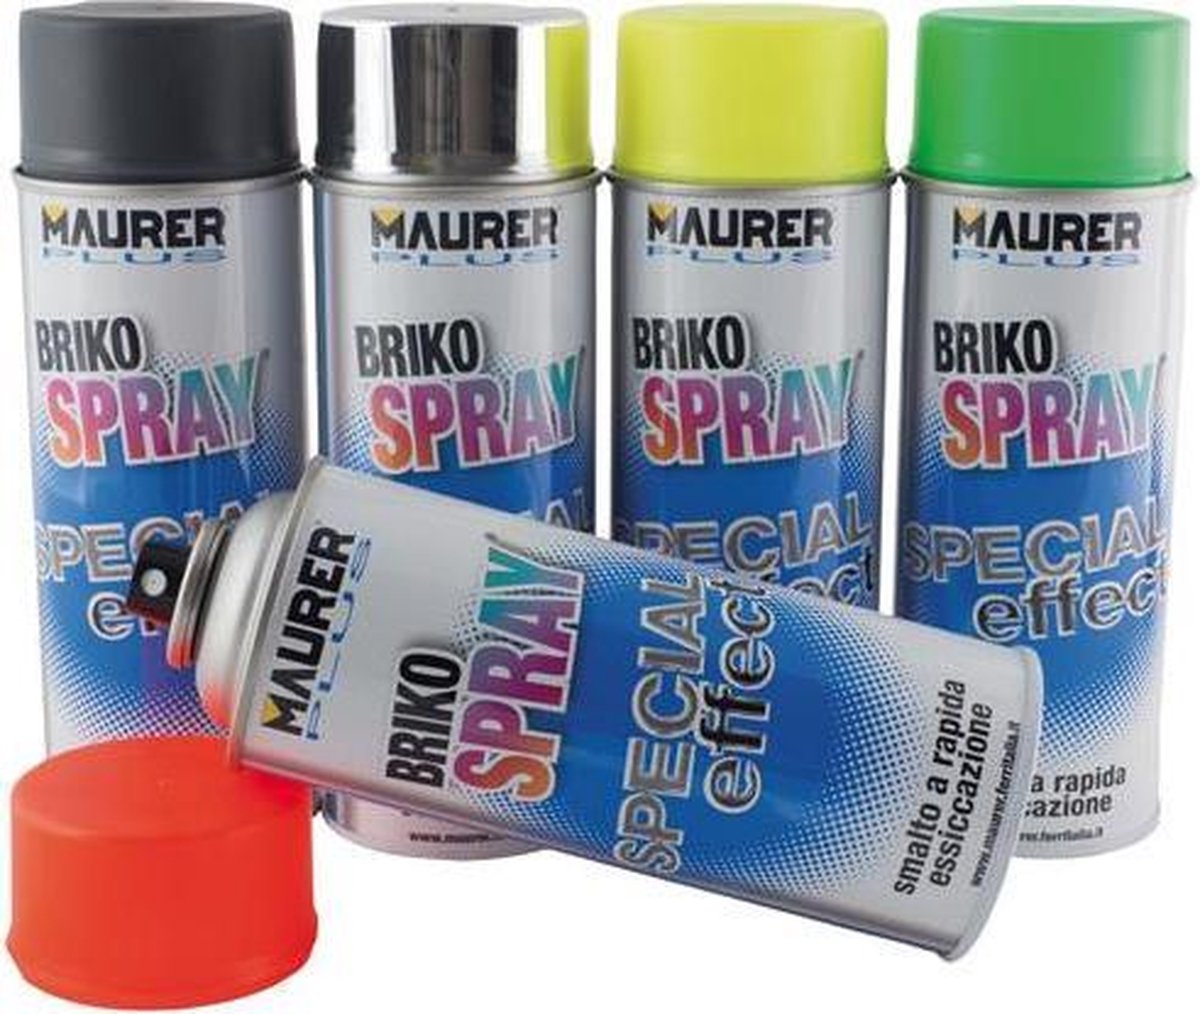 Maurer Plus Briko Spray - Spuitlak - Hittebestendig tot 800 graden - Ideaal tegen hoge temperaturen! - goud